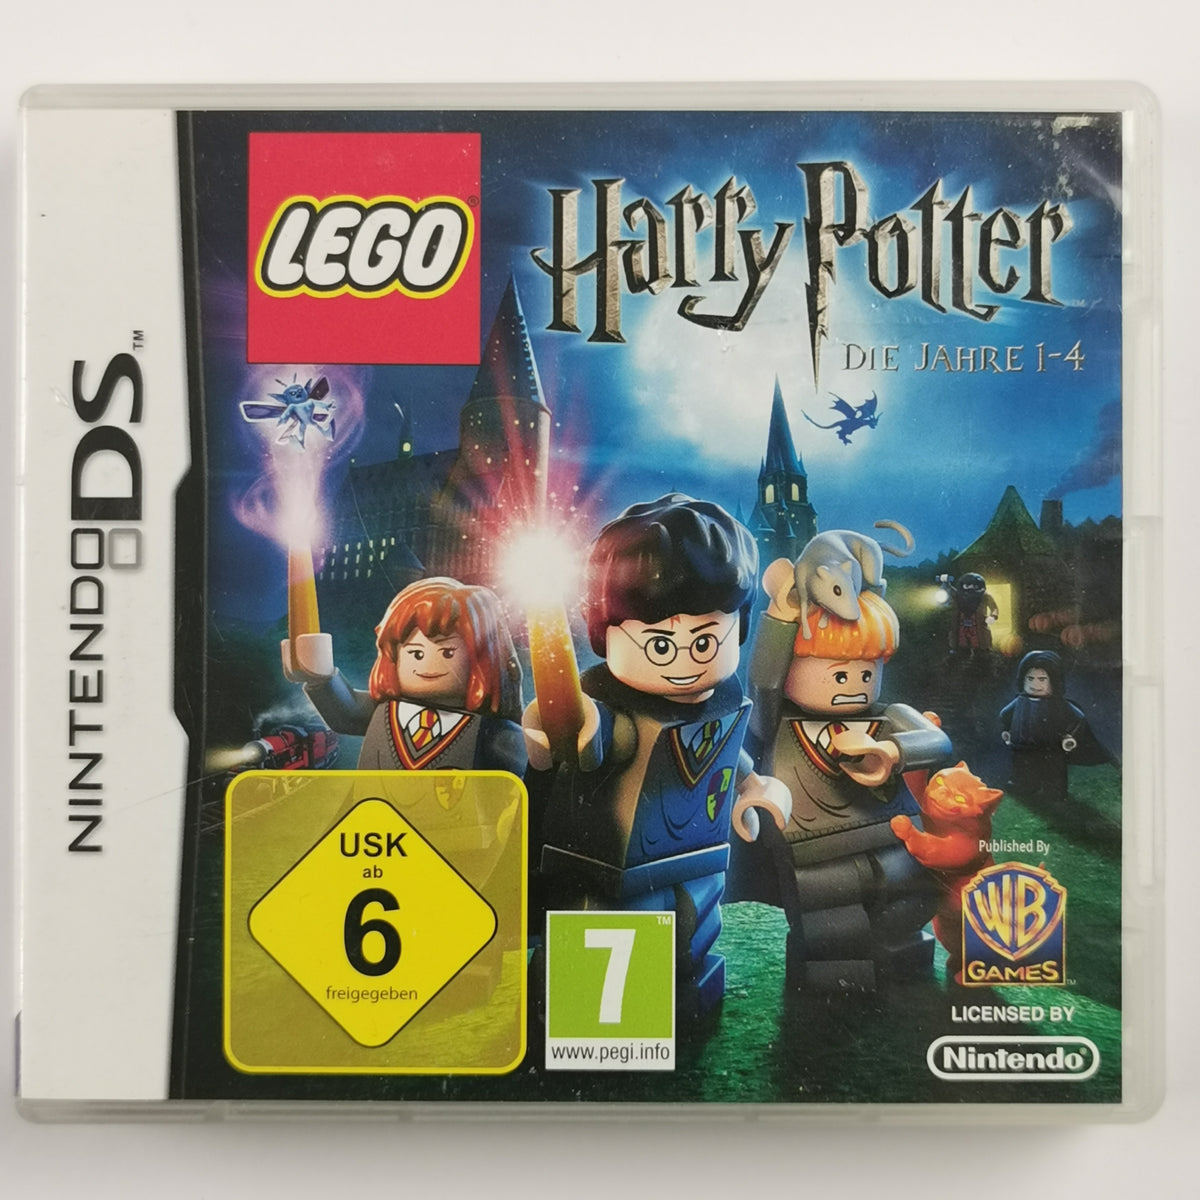 Lego Harry Potter   Die Jahre 1 4 [DS]